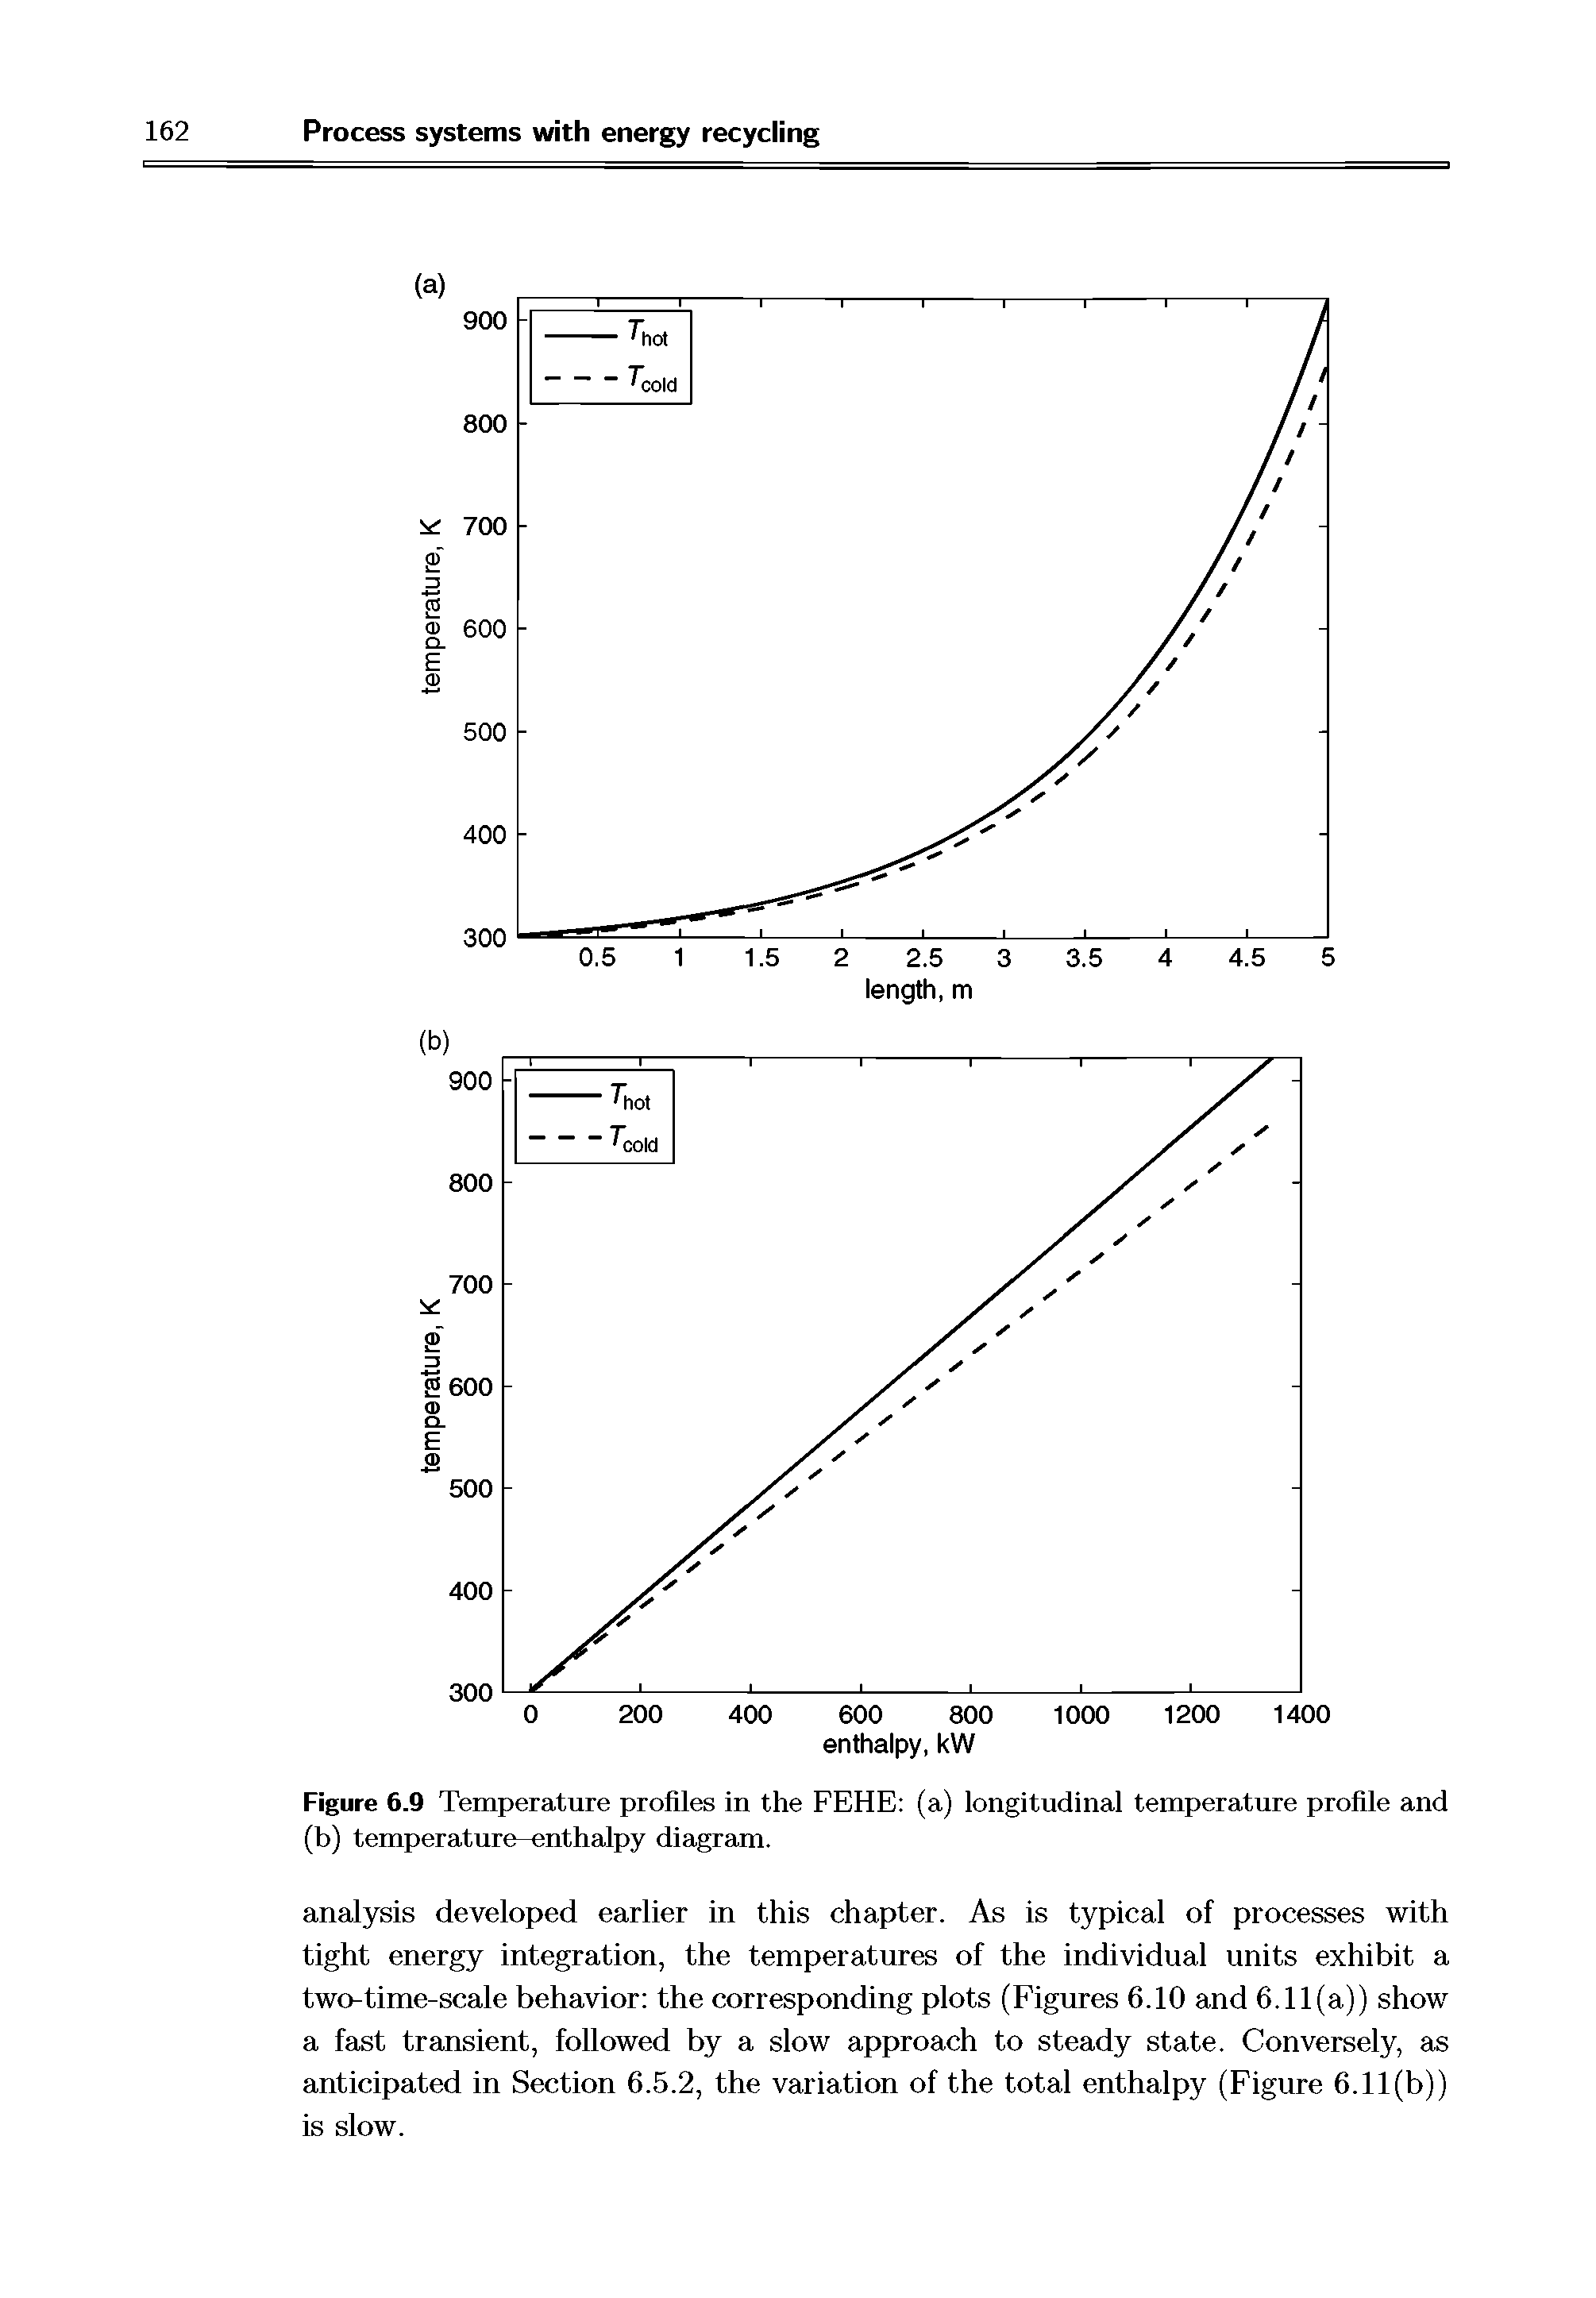 Figure 6.9 Temperature profiles in the FEHE (a) longitudinal temperature profile and (b) temperature-enthalpy diagram.